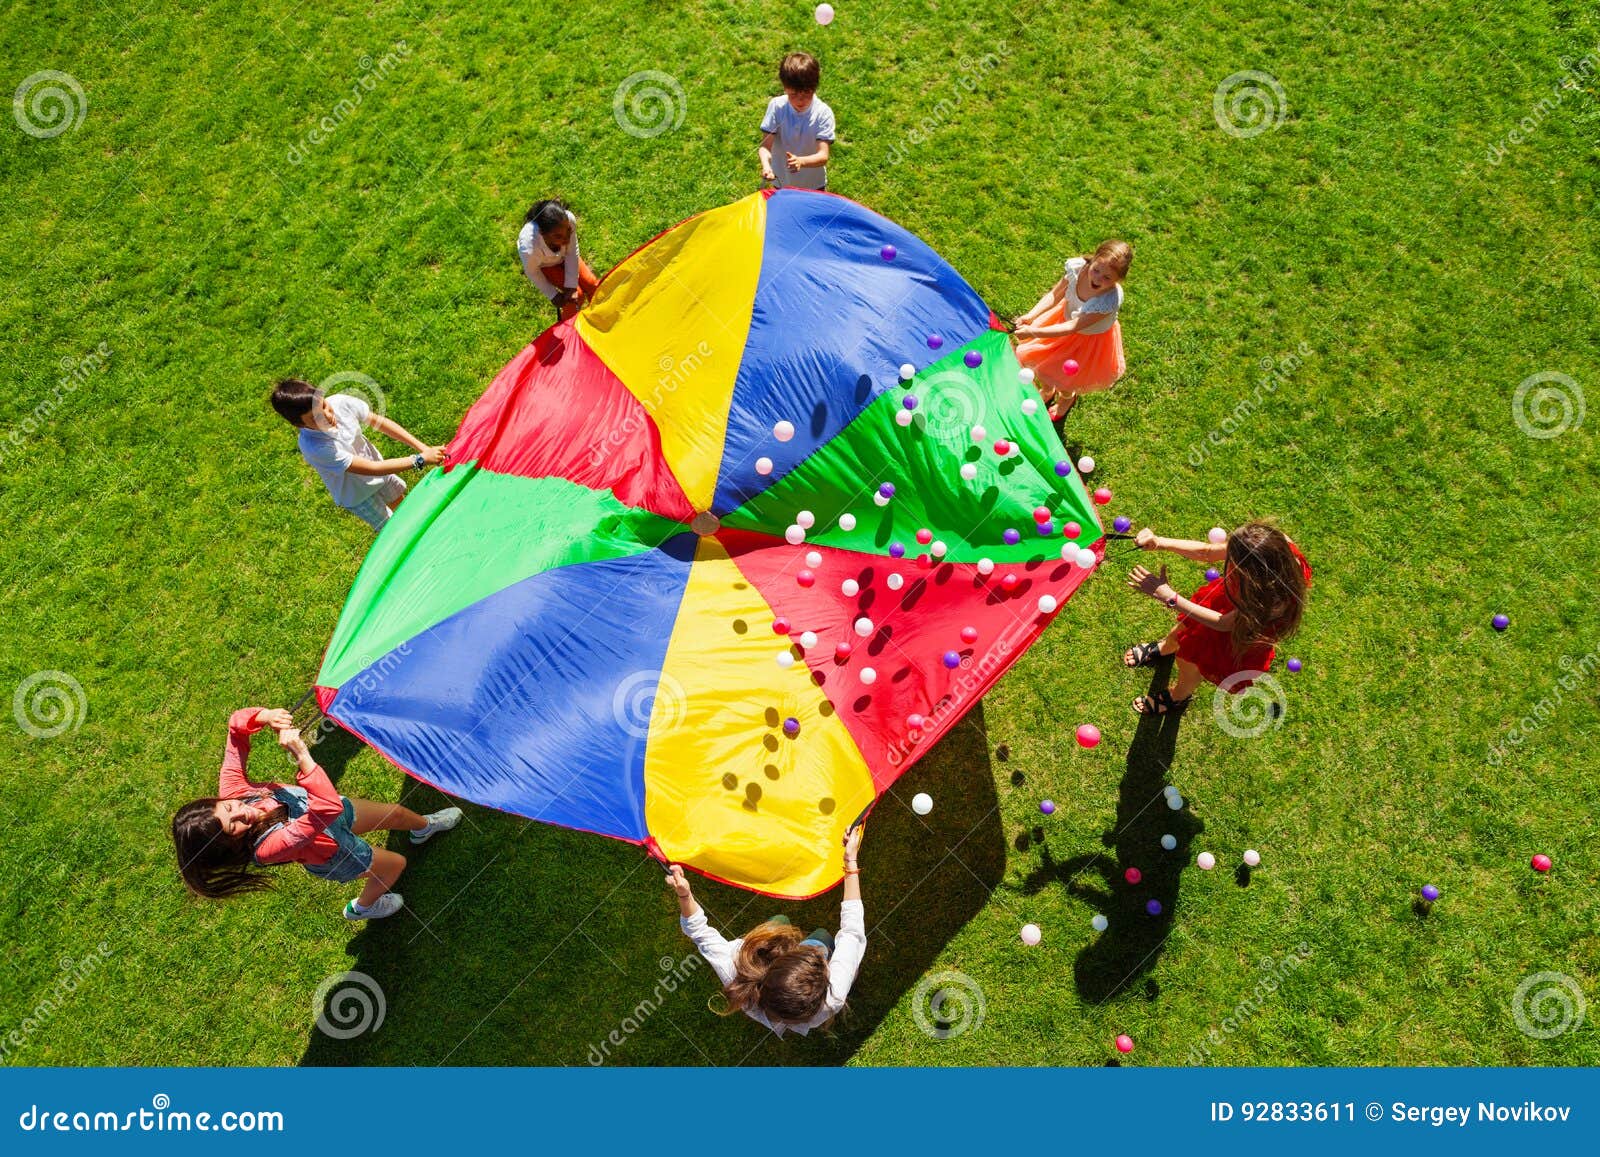 happy kids waving rainbow parachute full of balls